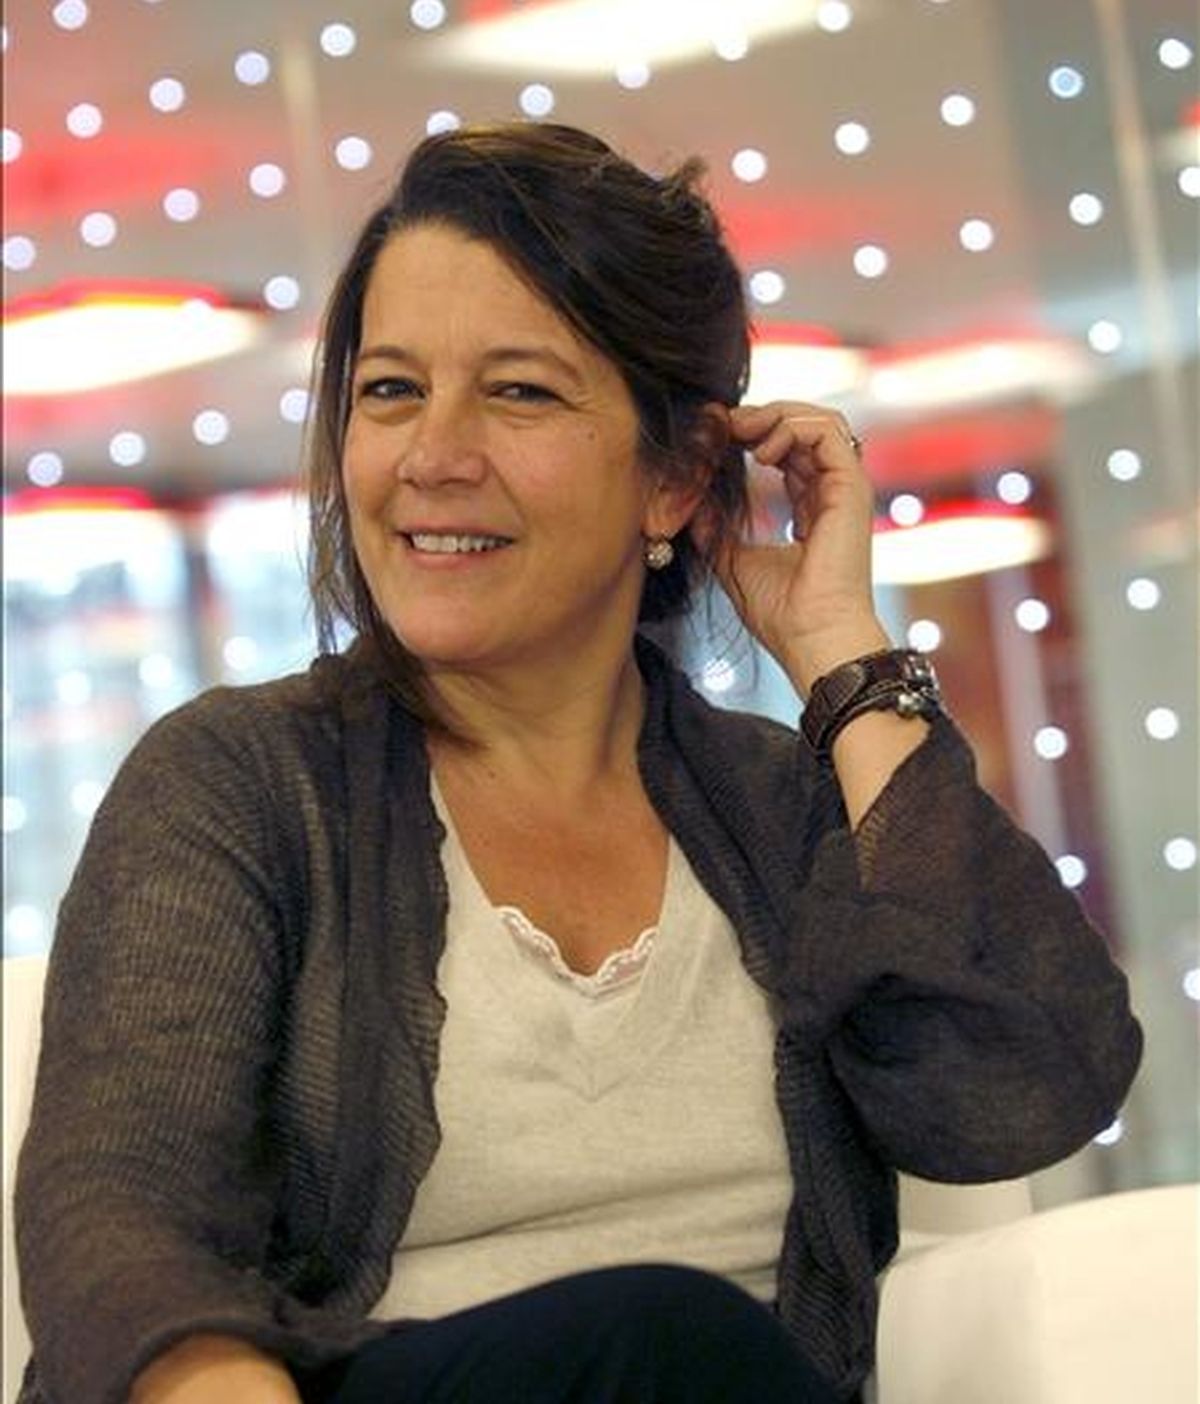 La directora de la feria internacional de Arte ARCO, Lourdes Fernández, en una entrevista reciente con Efe. EFE/Archivo